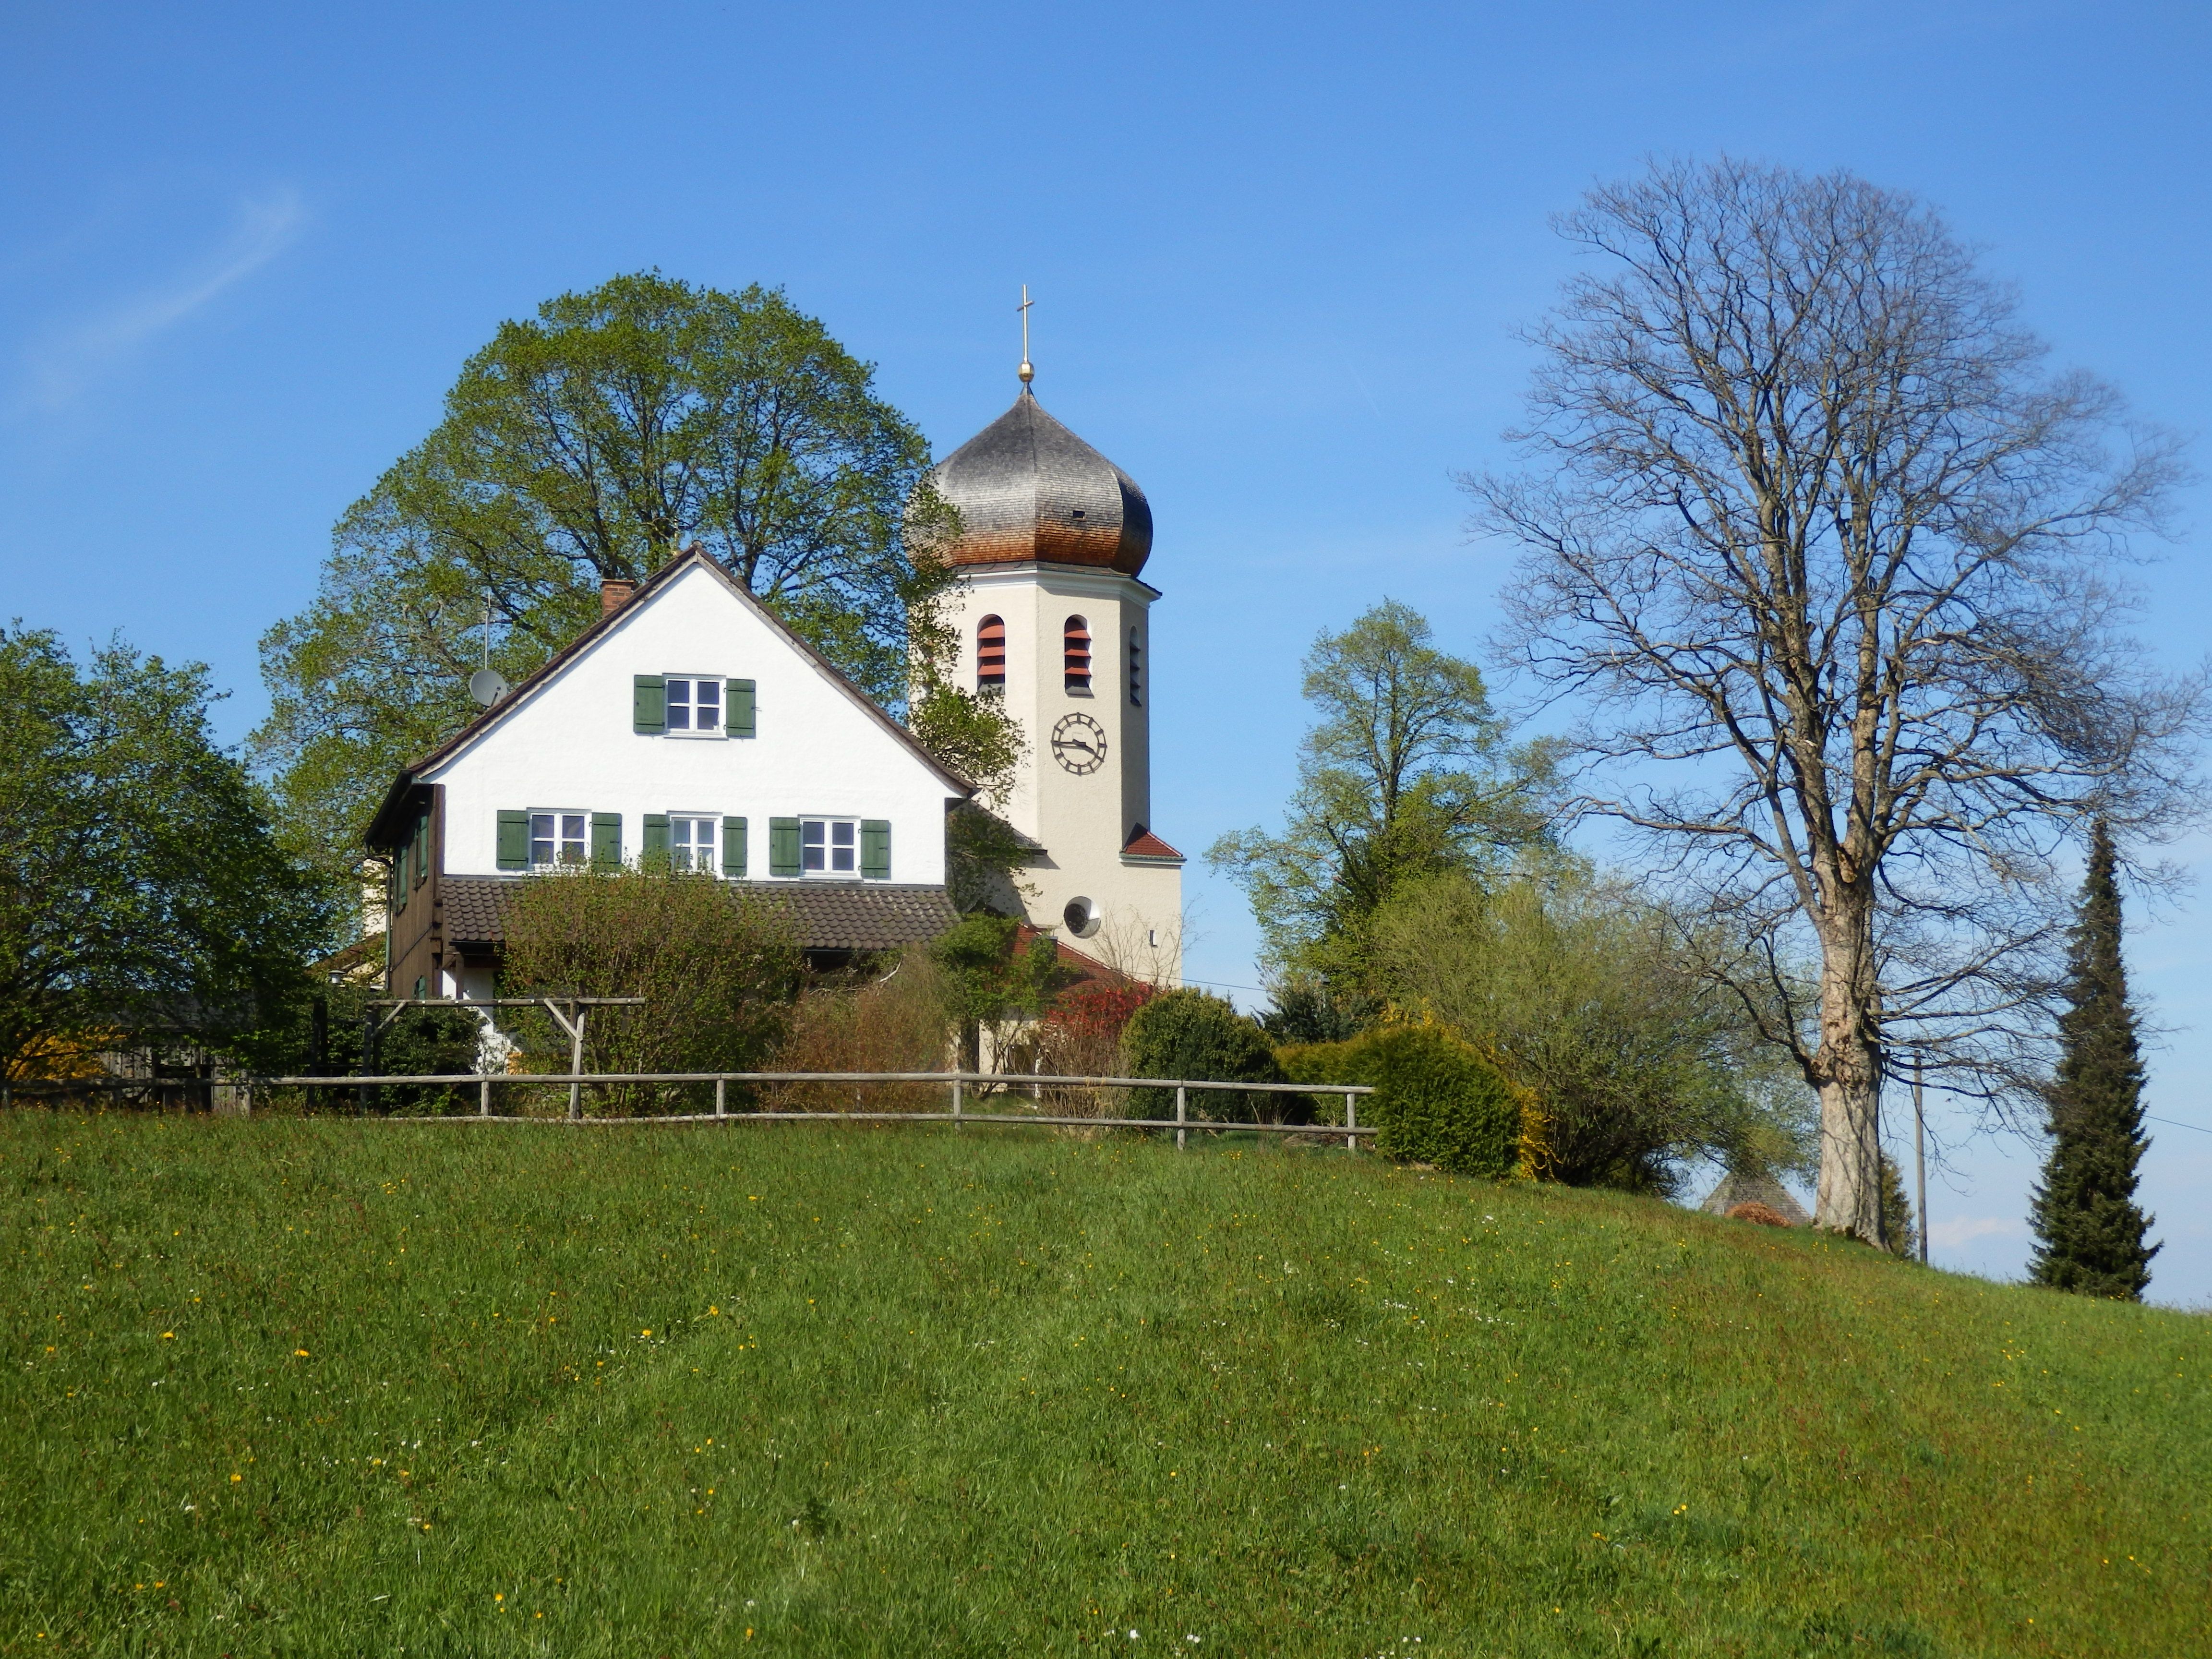 
die Christkönigkirche bei Frasdorf